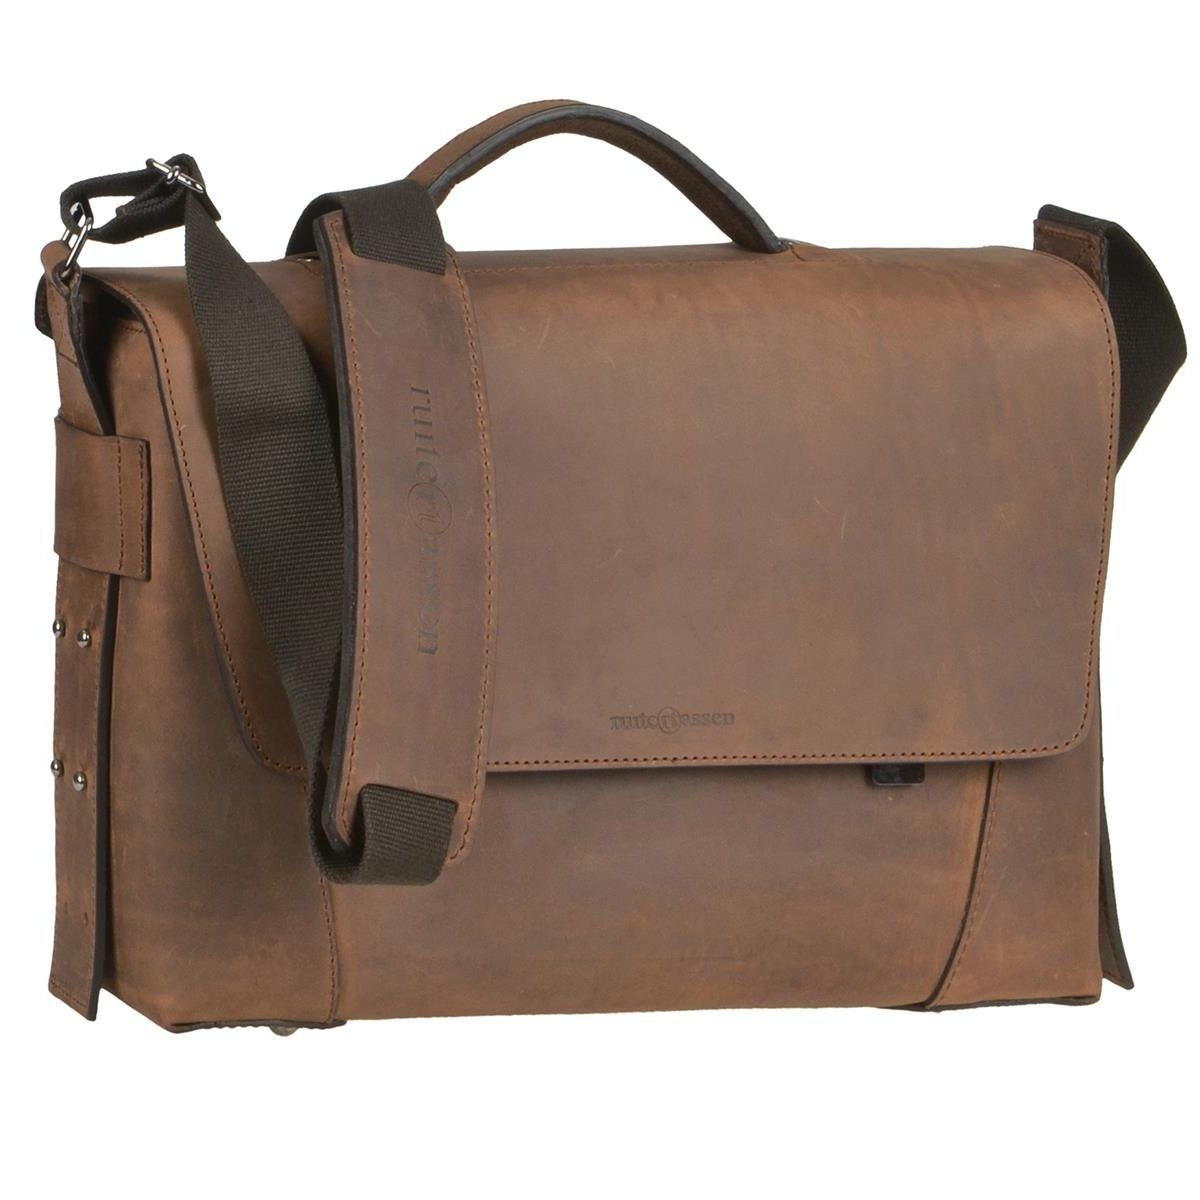 Ruitertassen Aktentasche Vanguard, 37 cm Lehrertasche mit 2 Fächern, dickes rustikales Leder ranger